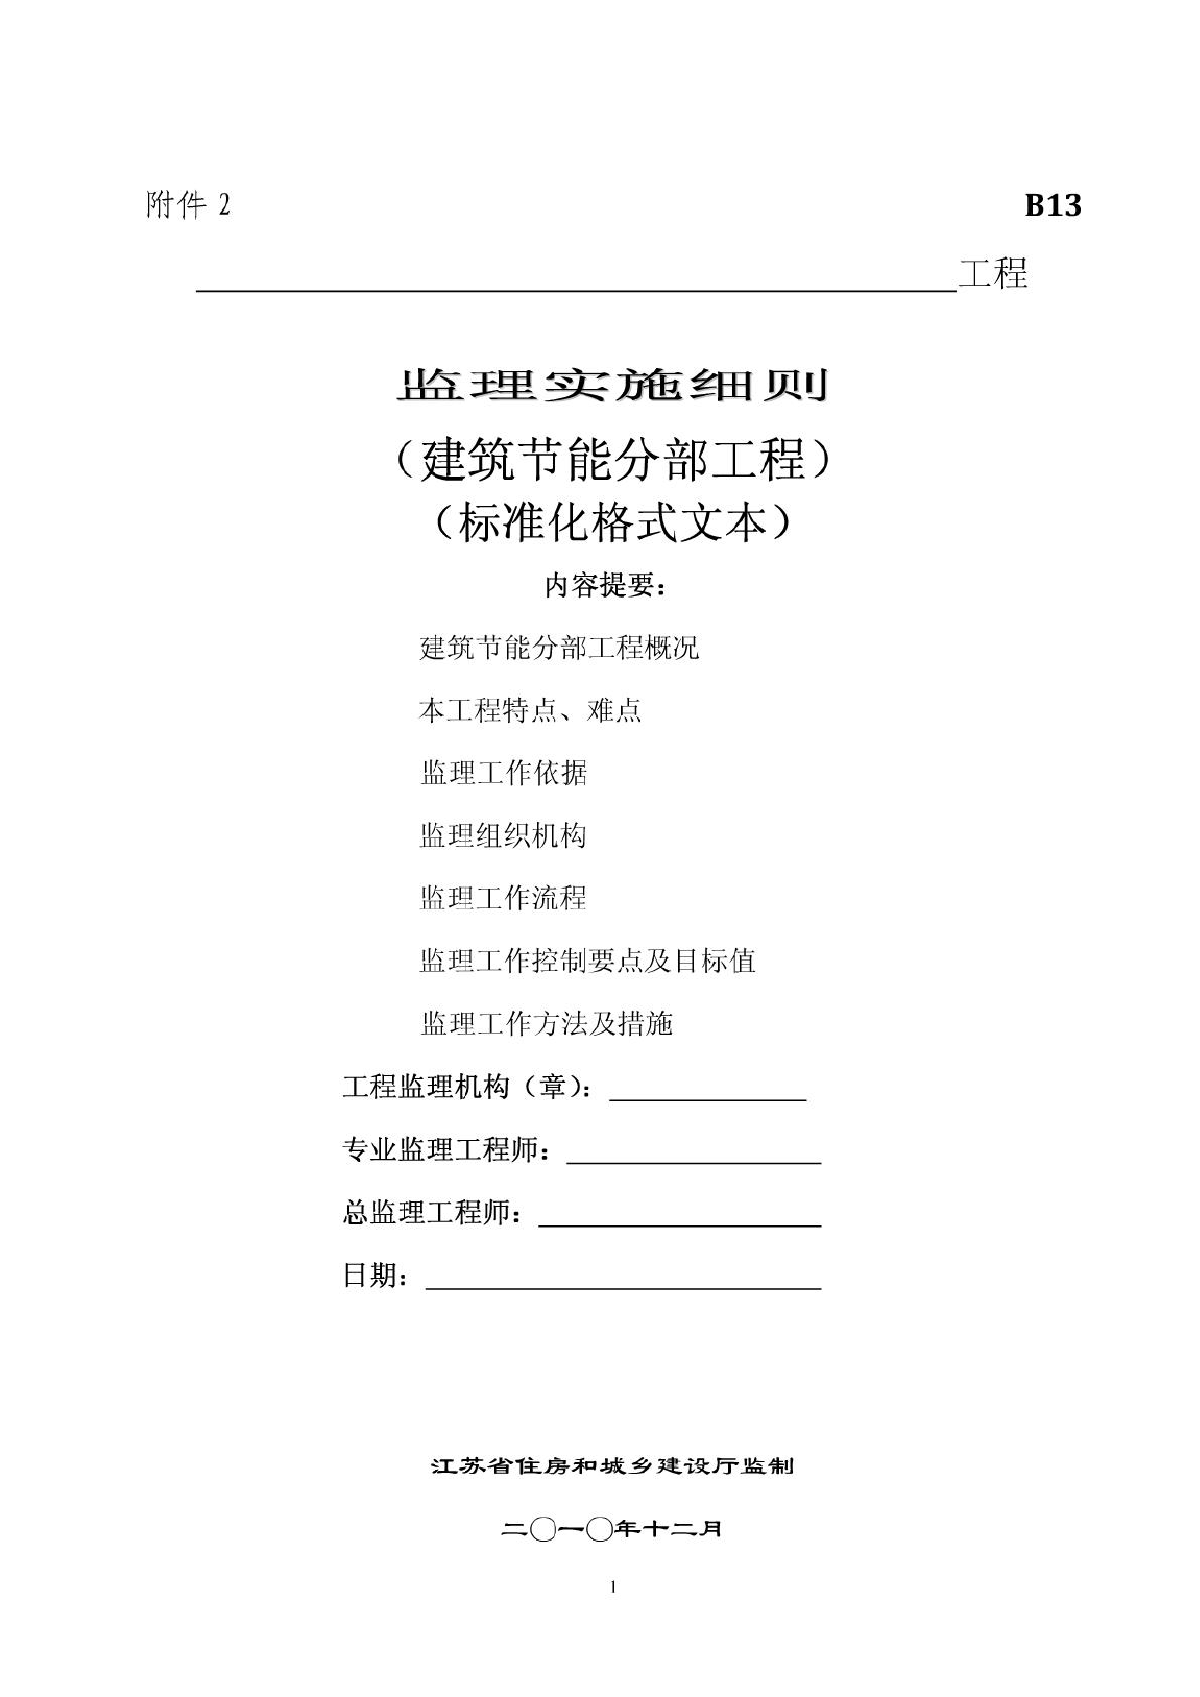 江苏省建筑节能分布工程监理实施细则(标准化格式文本)